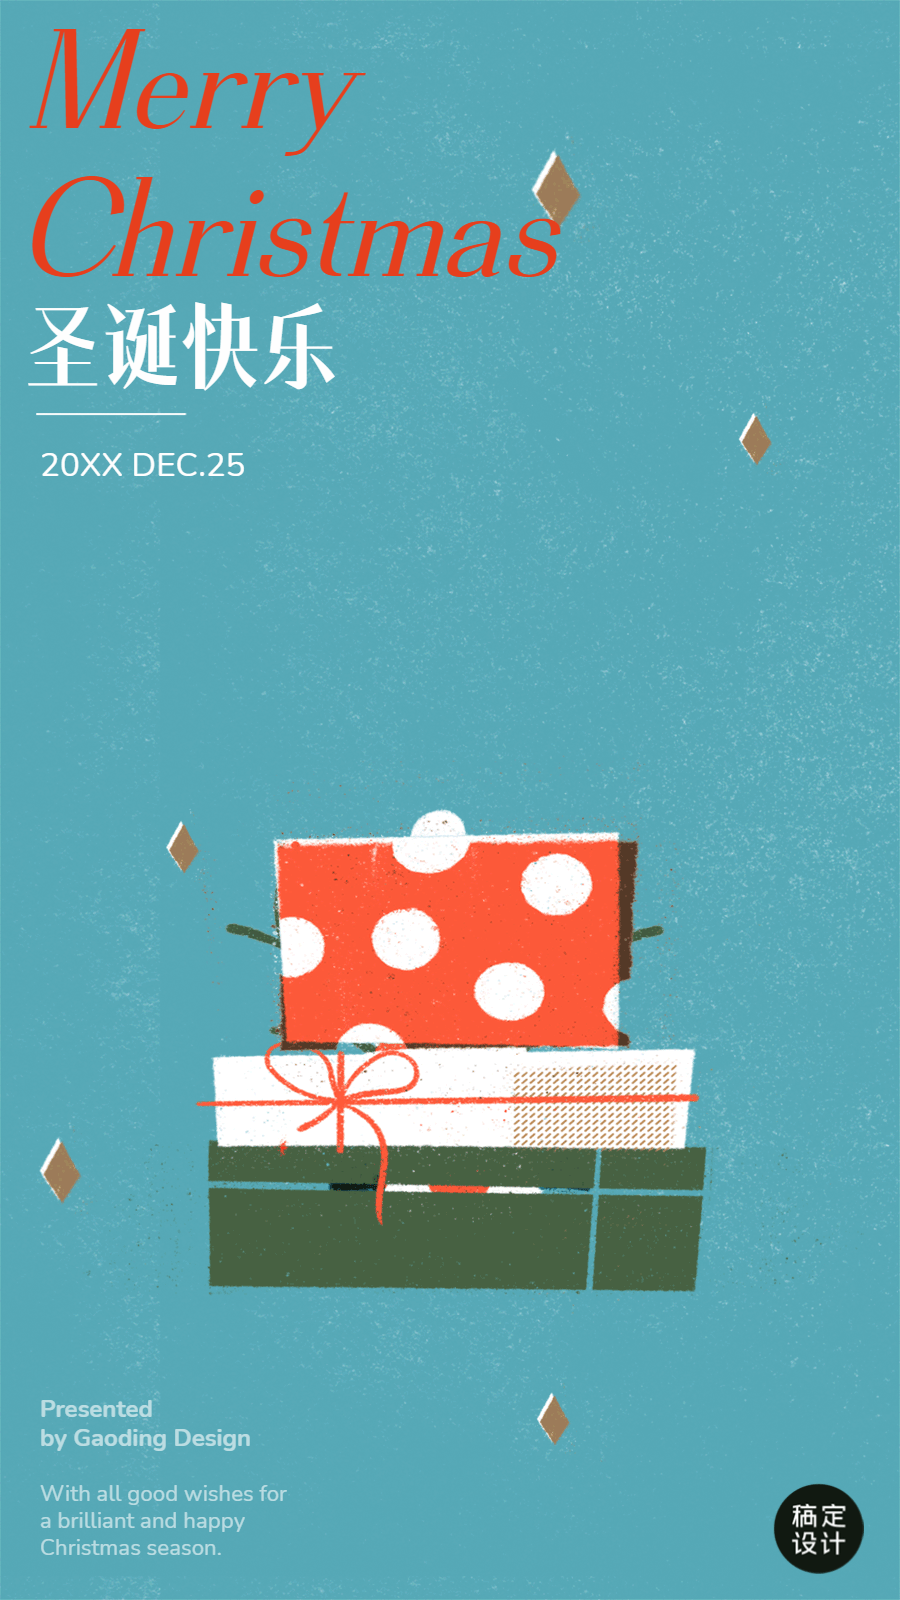 圣诞节可爱插画祝福GIF动态海报预览效果